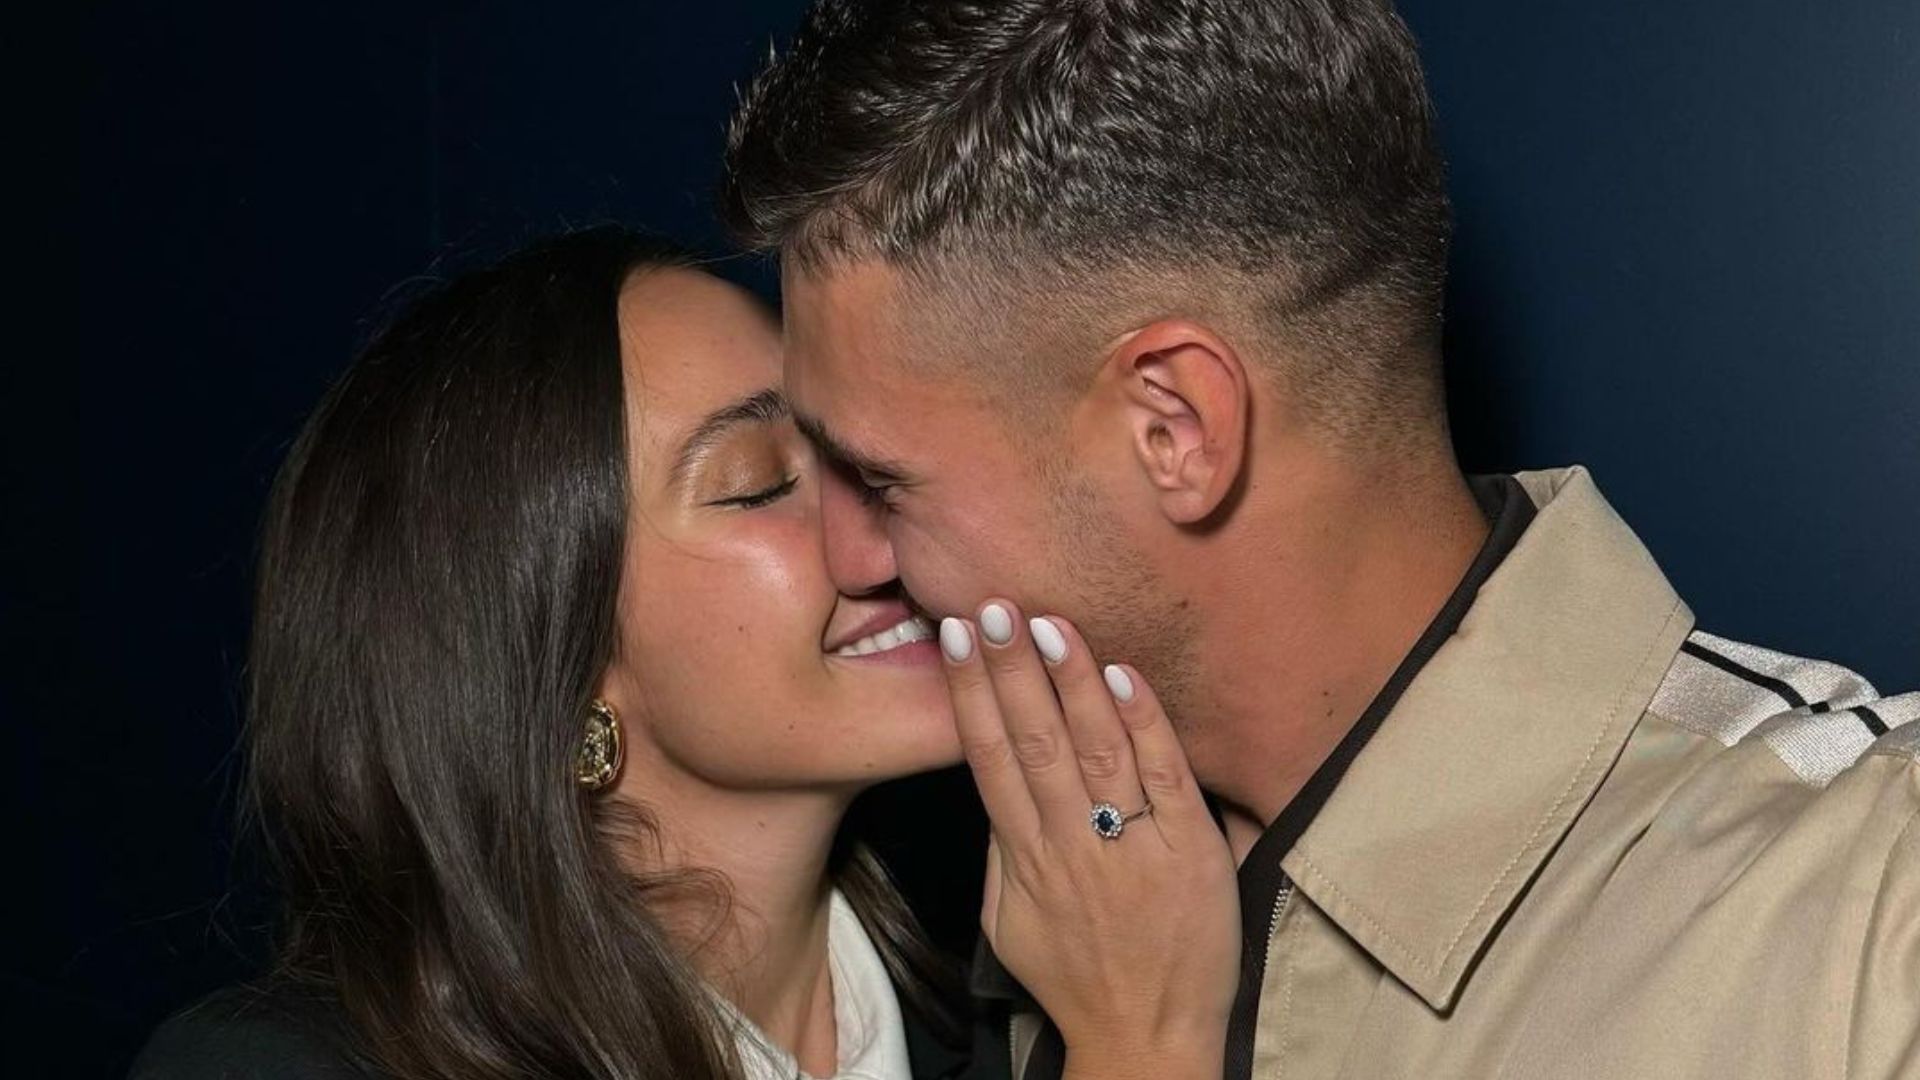 Ana Moya se compromete con Diego Conde cinco meses después de anunciar su relación